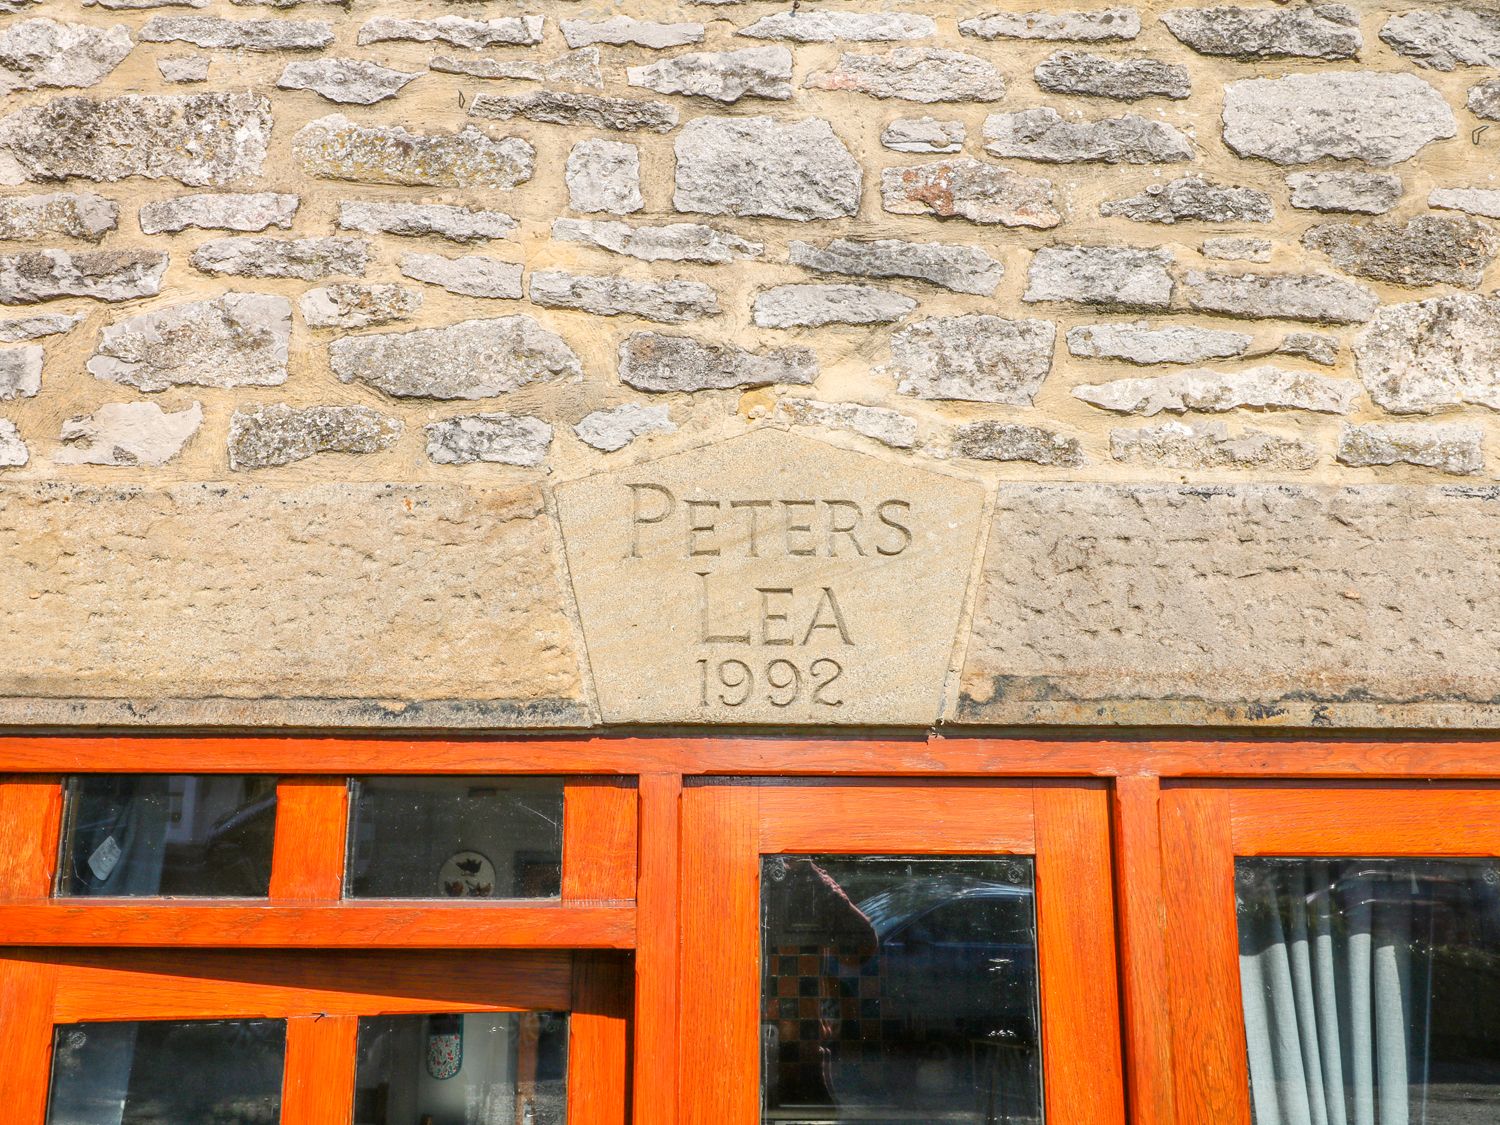 Peters Lea, Bakewell